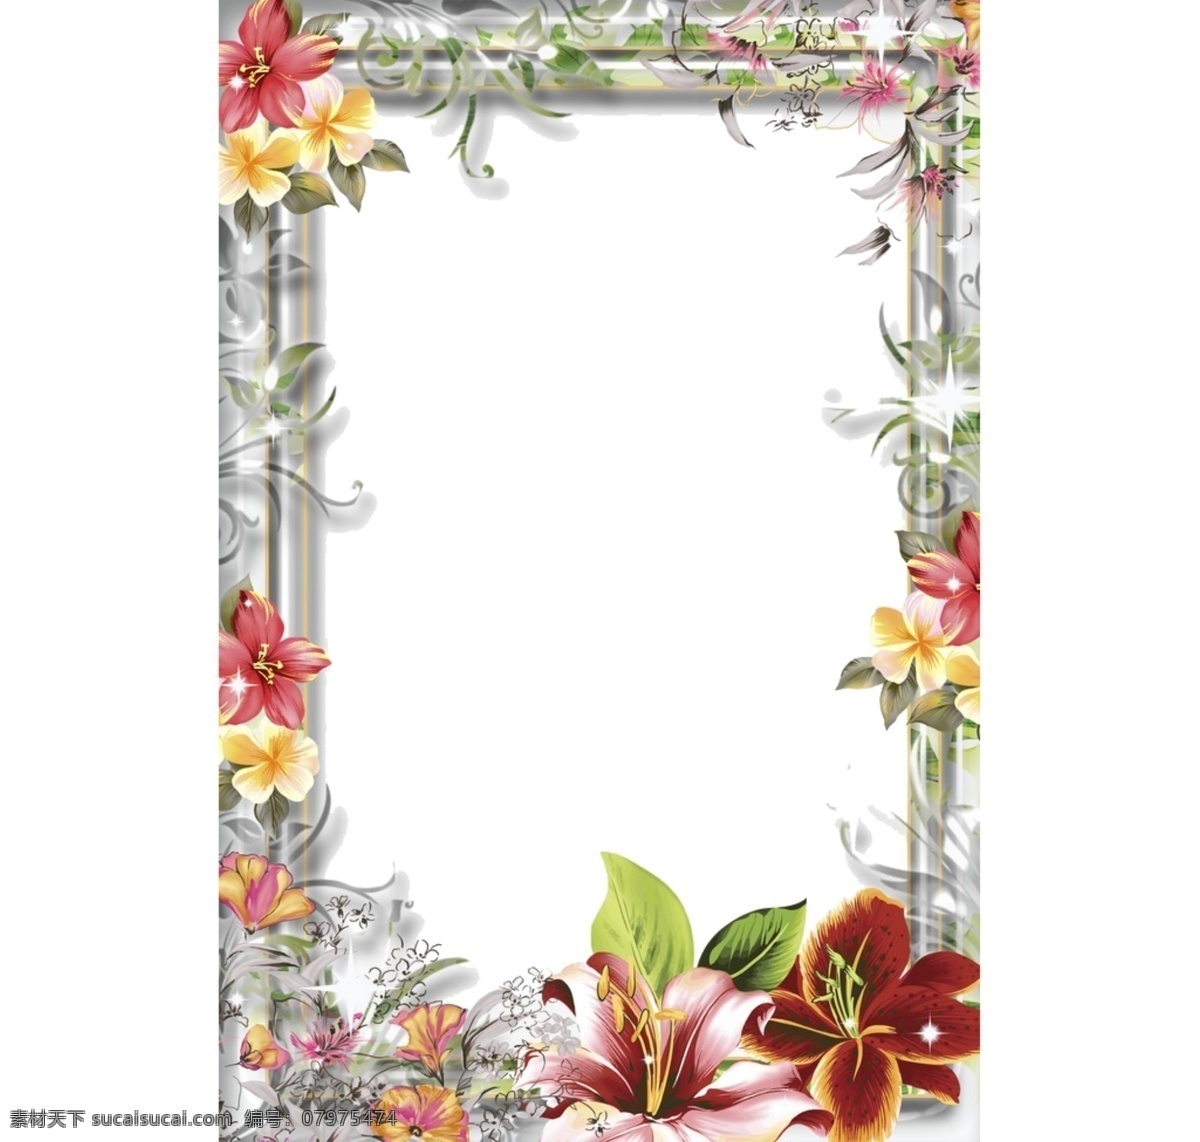 漂亮 鲜艳 花卉 方形 框 免 抠 透明 花边 装饰 边框 图形 花卉花边图形 花卉边框素材 花卉镜框素材 花卉相框